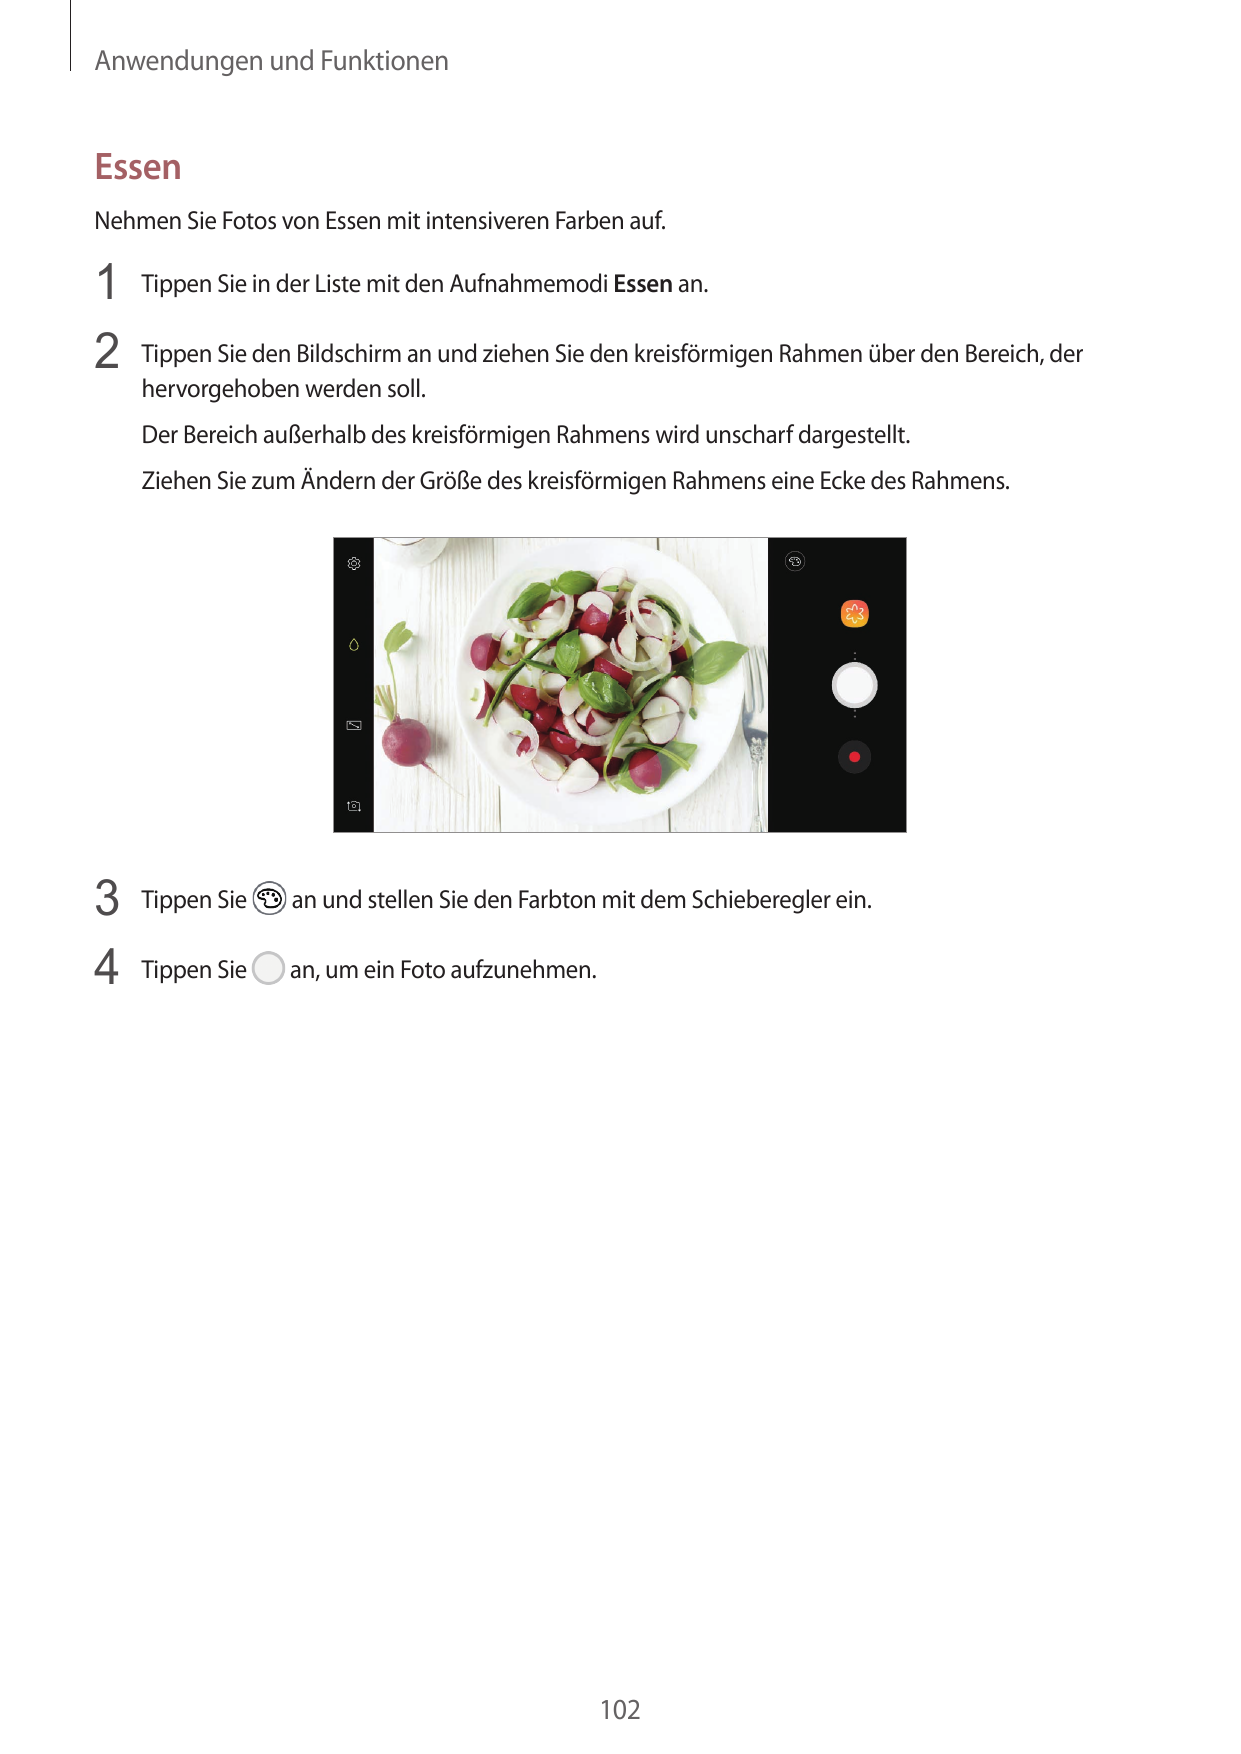 Anwendungen und FunktionenEssenNehmen Sie Fotos von Essen mit intensiveren Farben auf.1 Tippen Sie in der Liste mit den Aufnahme